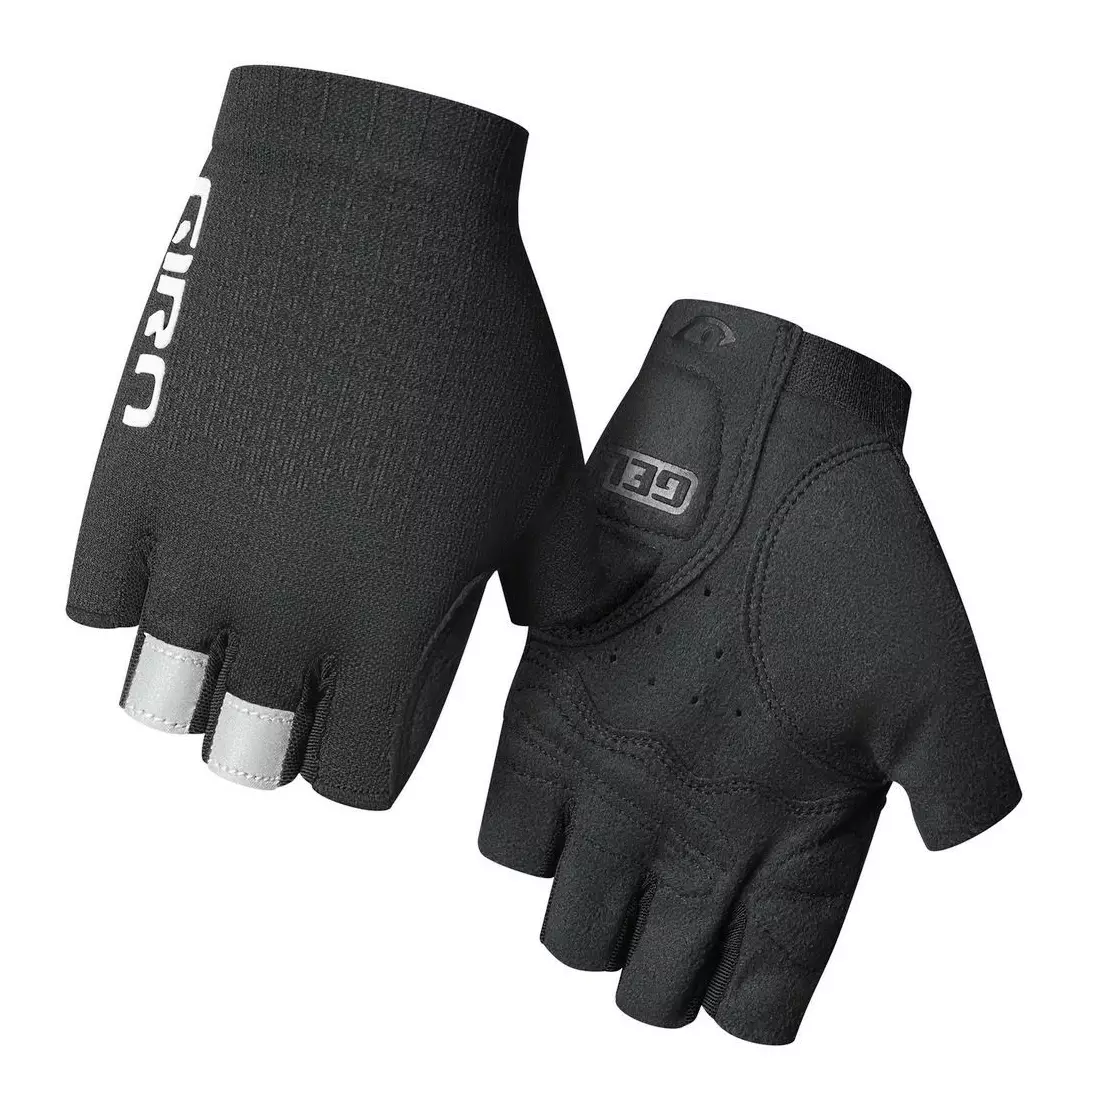 GIRO women's cycling gloves xnetic road short finger black GR-7111861